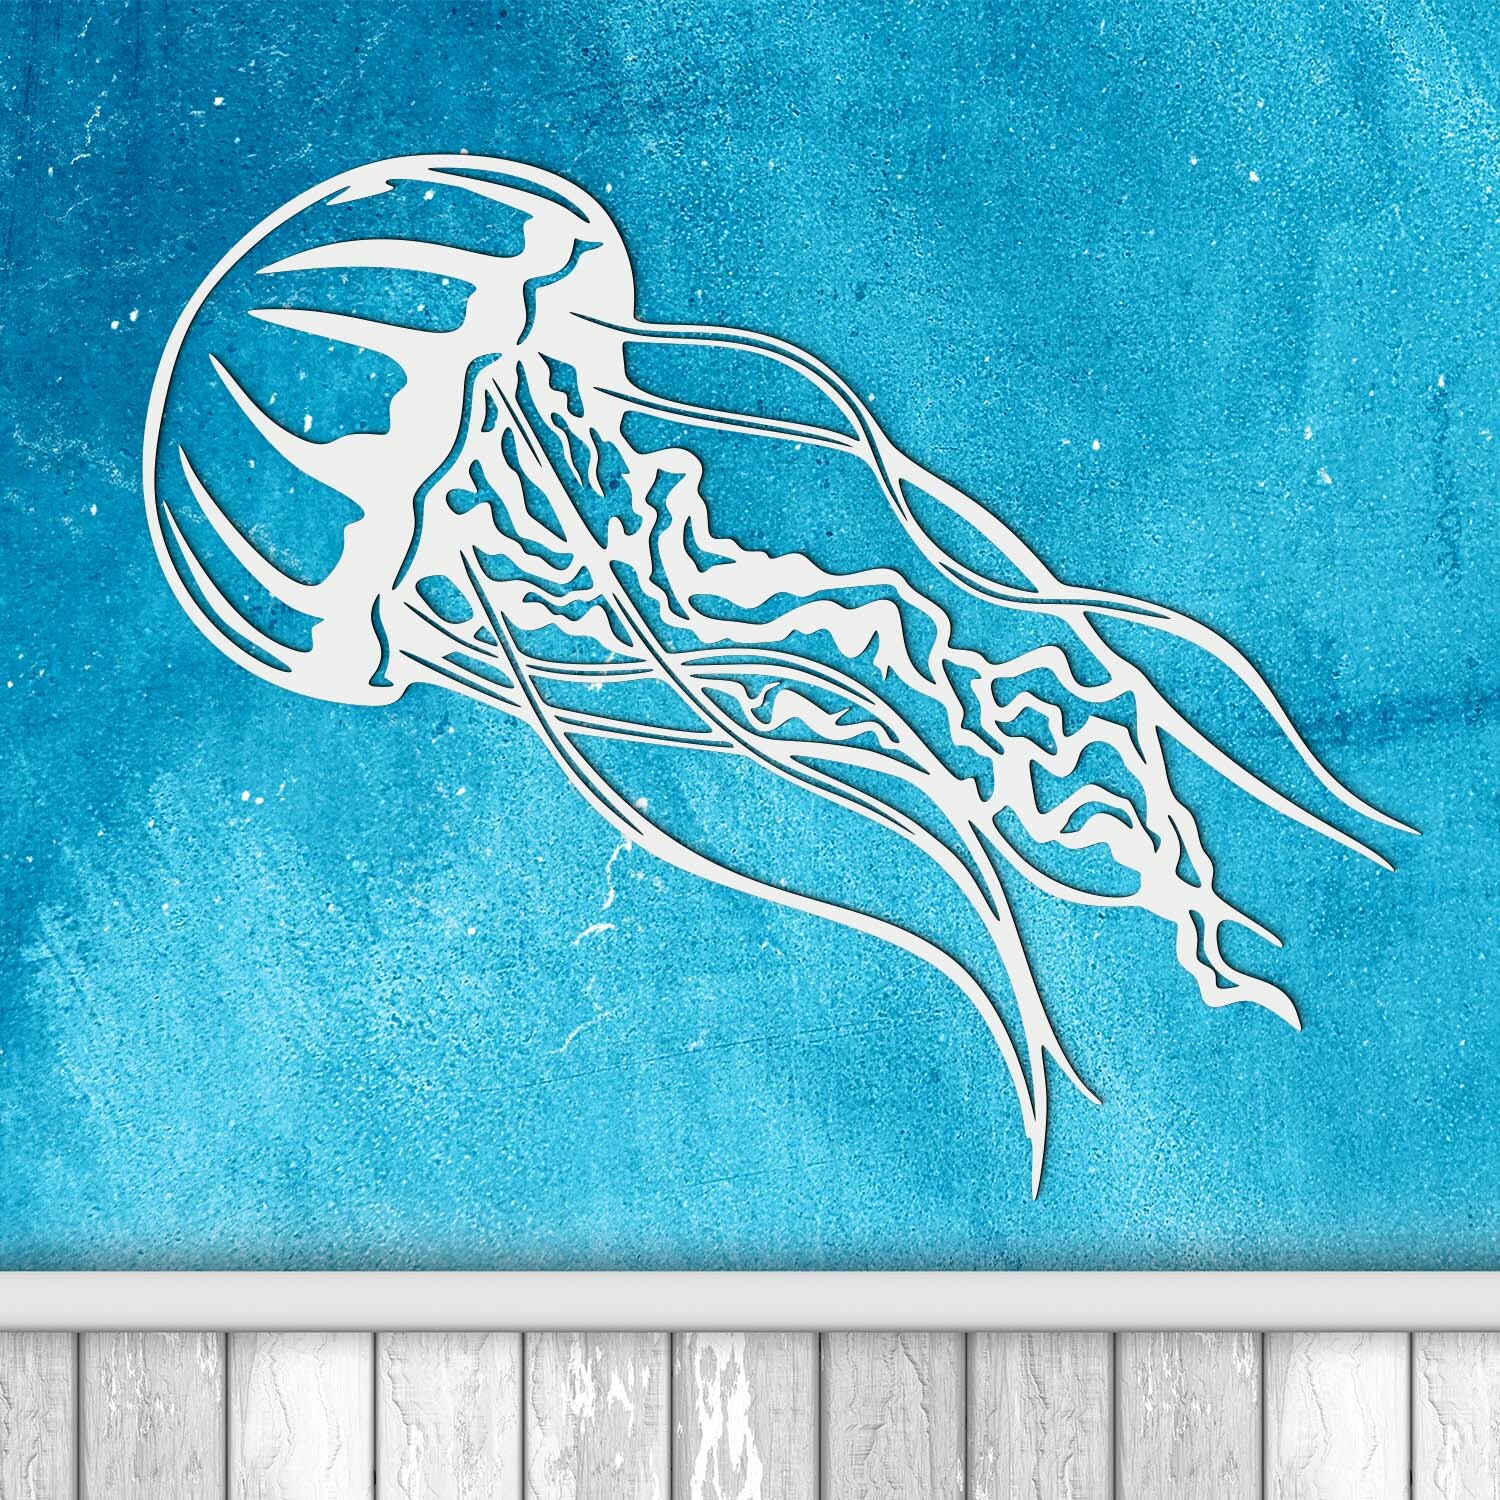 Moderný obraz na stenu - Medúza, Biela